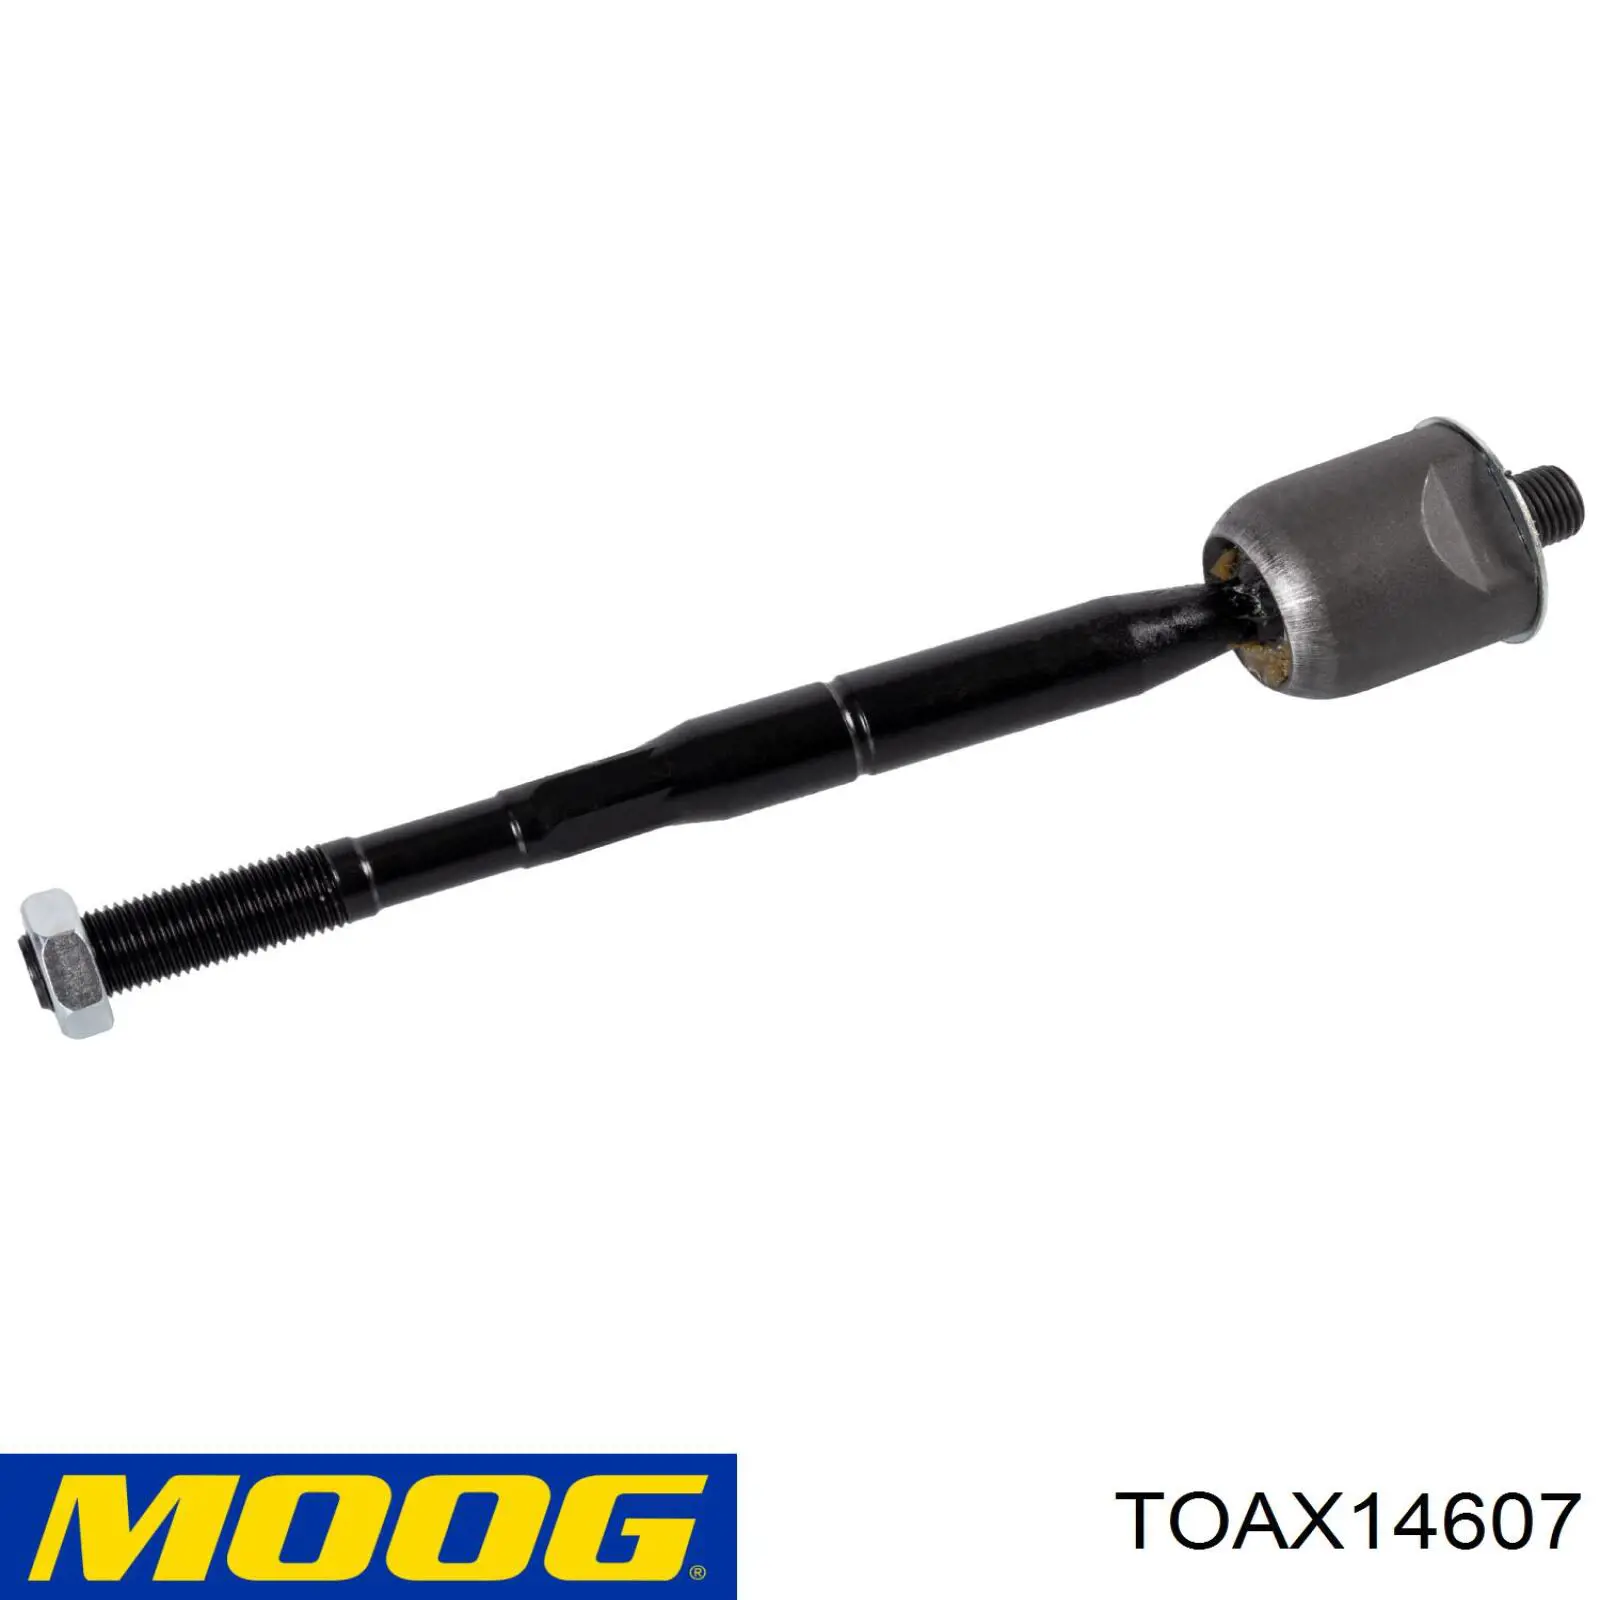 TO-AX-14607 Moog barra de acoplamiento